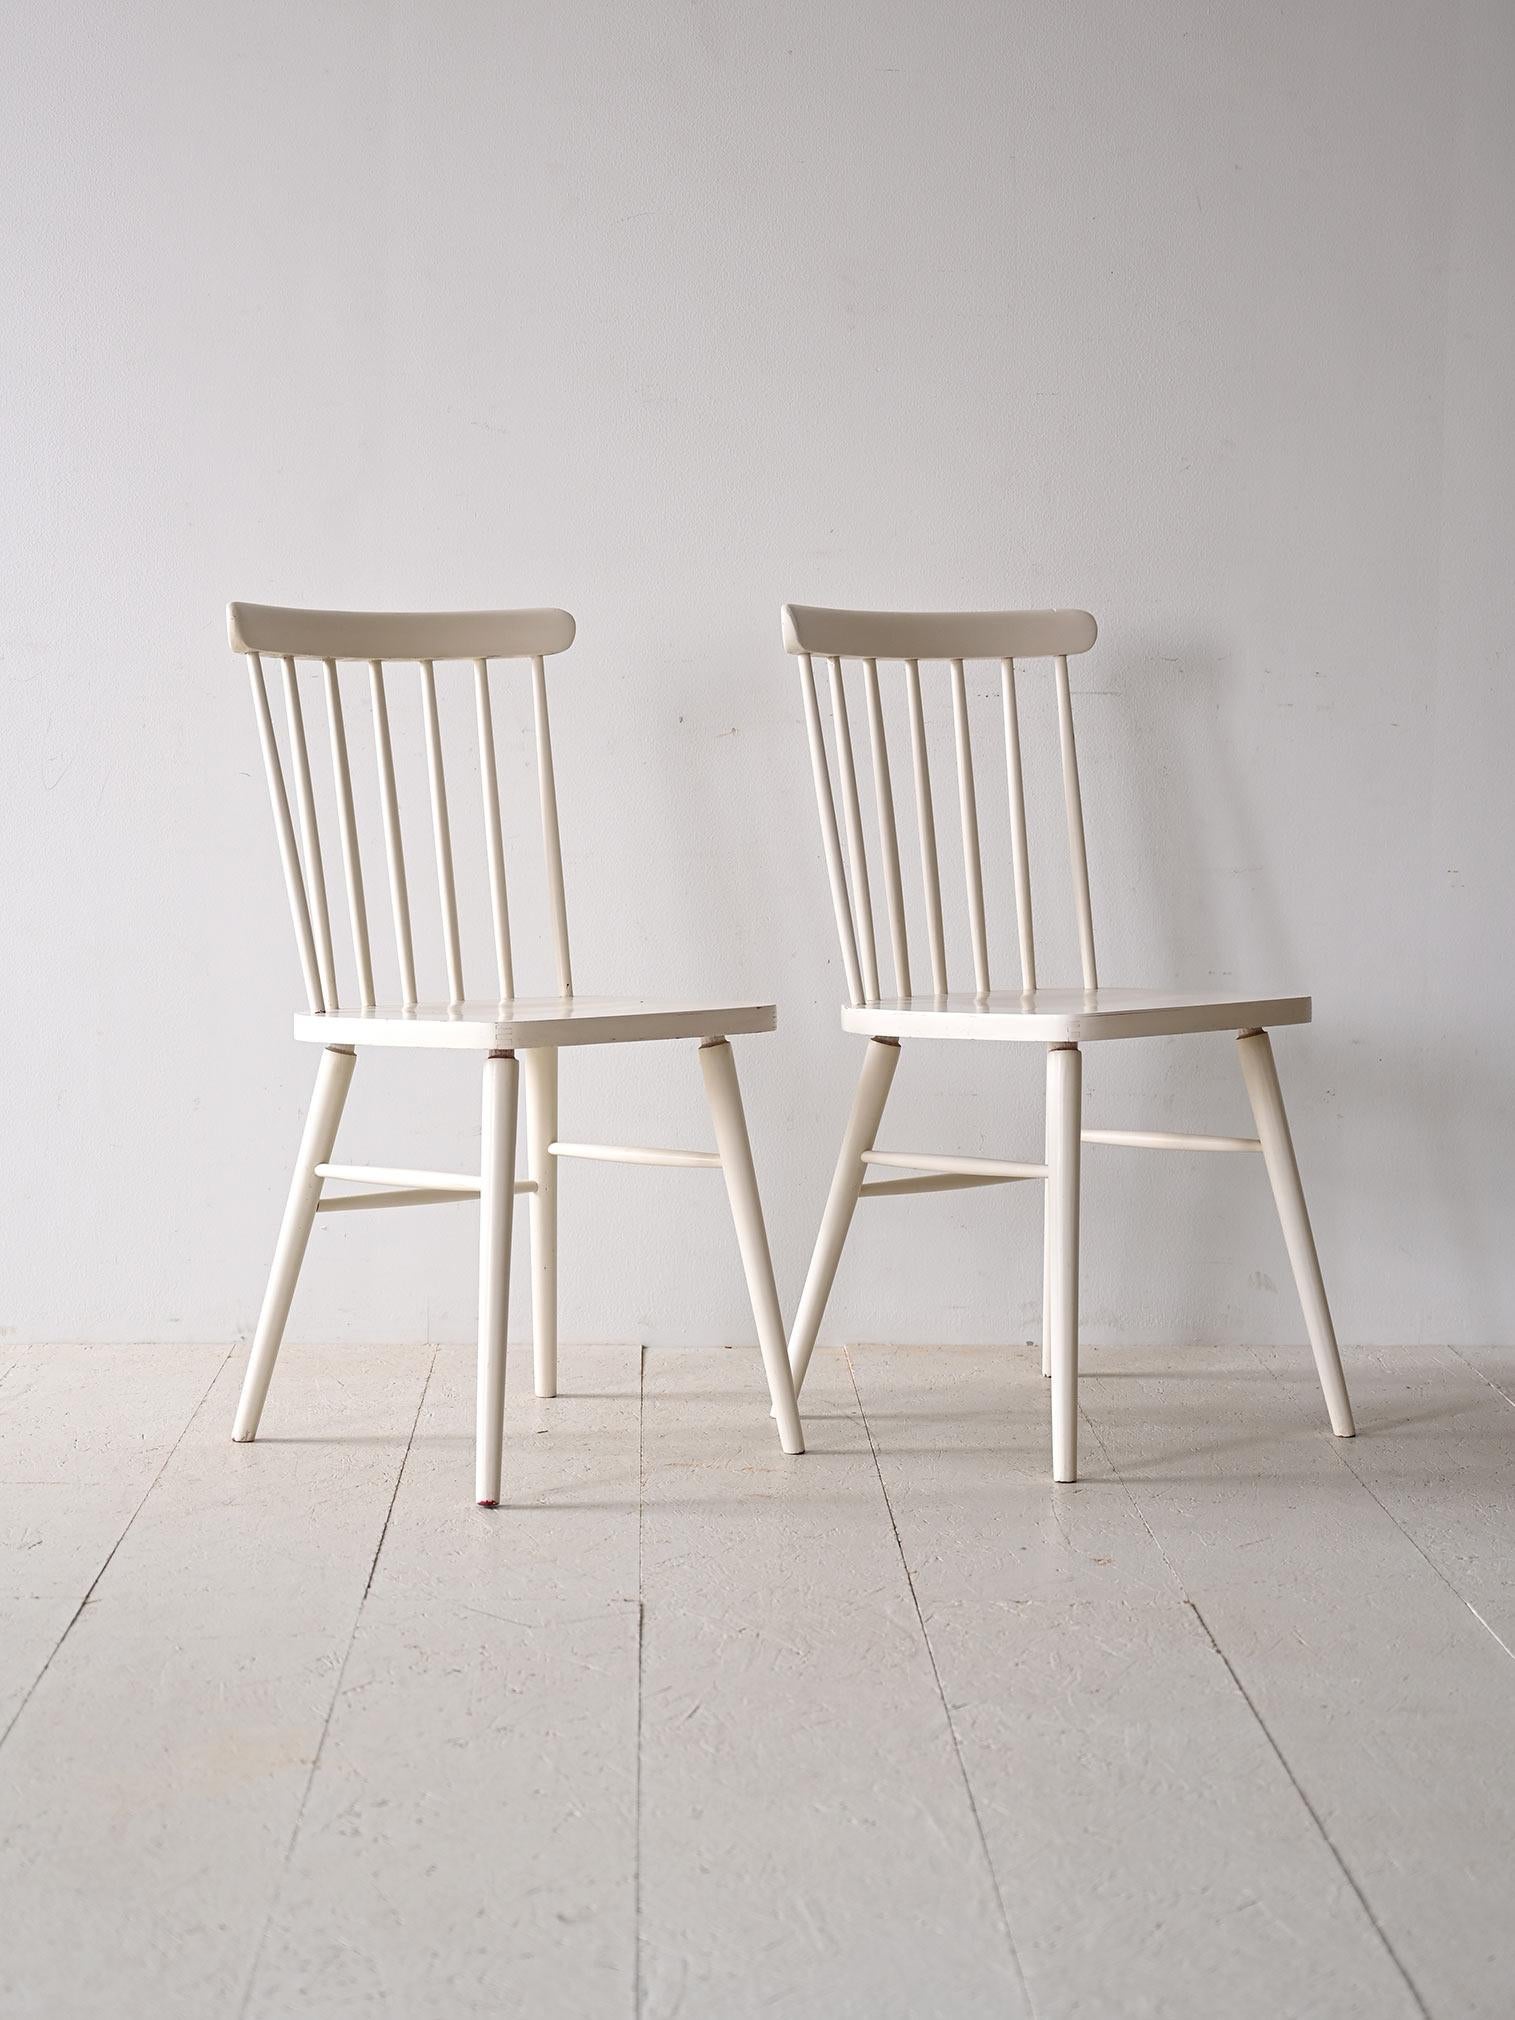 Paire de deux chaises en bois vintage originales.

Ce modèle de siège, devenu célèbre dans le monde entier, est toujours en production aujourd'hui car son design est très contemporain. Il se caractérise par des lignes minimalistes et élégantes et